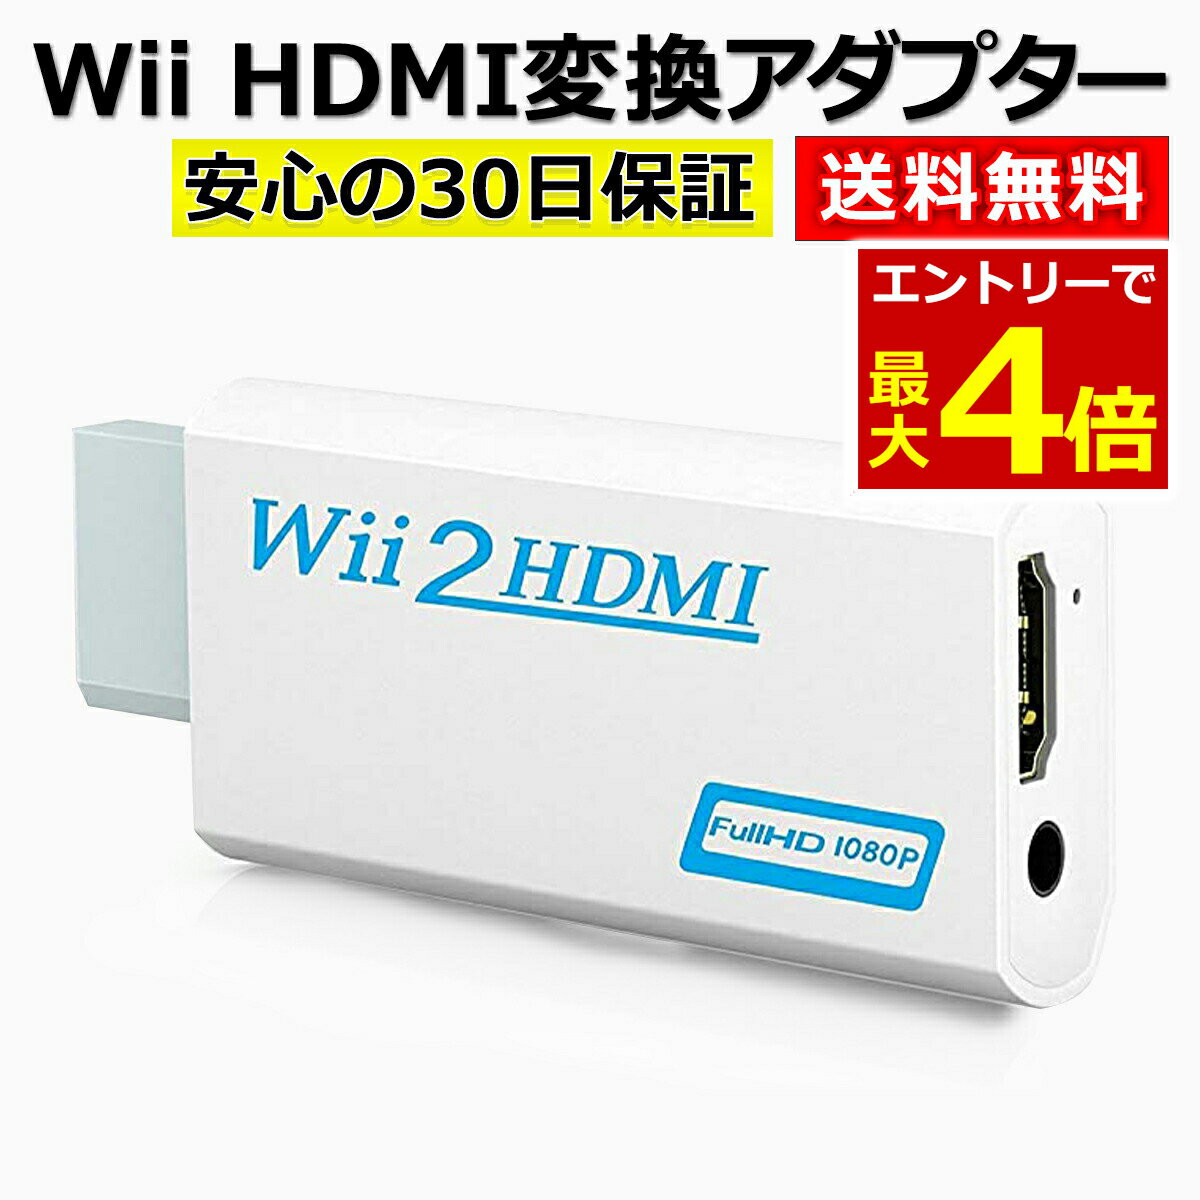 【5/18エントリー最大P4倍!】Wii HDMI 